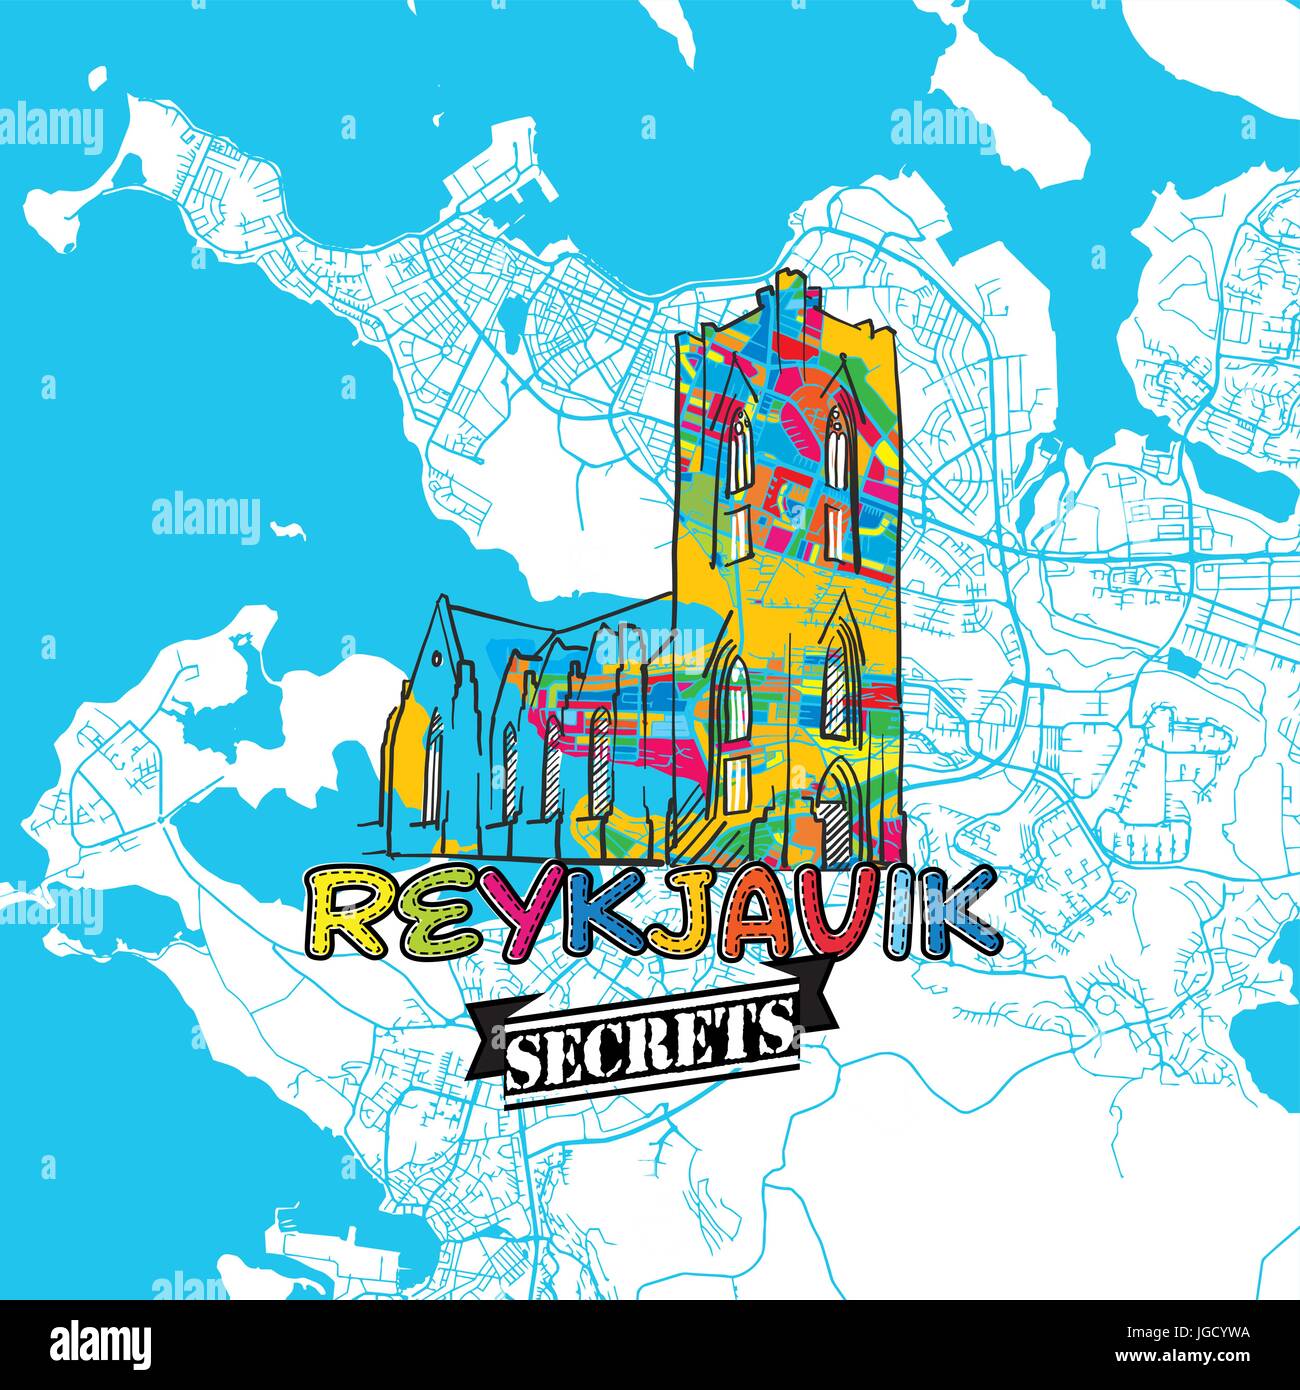 Voyage Reykjavik Art Secrets Site pour la cartographie des experts et des guides de voyage. Le logo de la ville à la main, typo de badge et dessinés à la main sur le dessus de l'image vectorielle sont regroupés Illustration de Vecteur